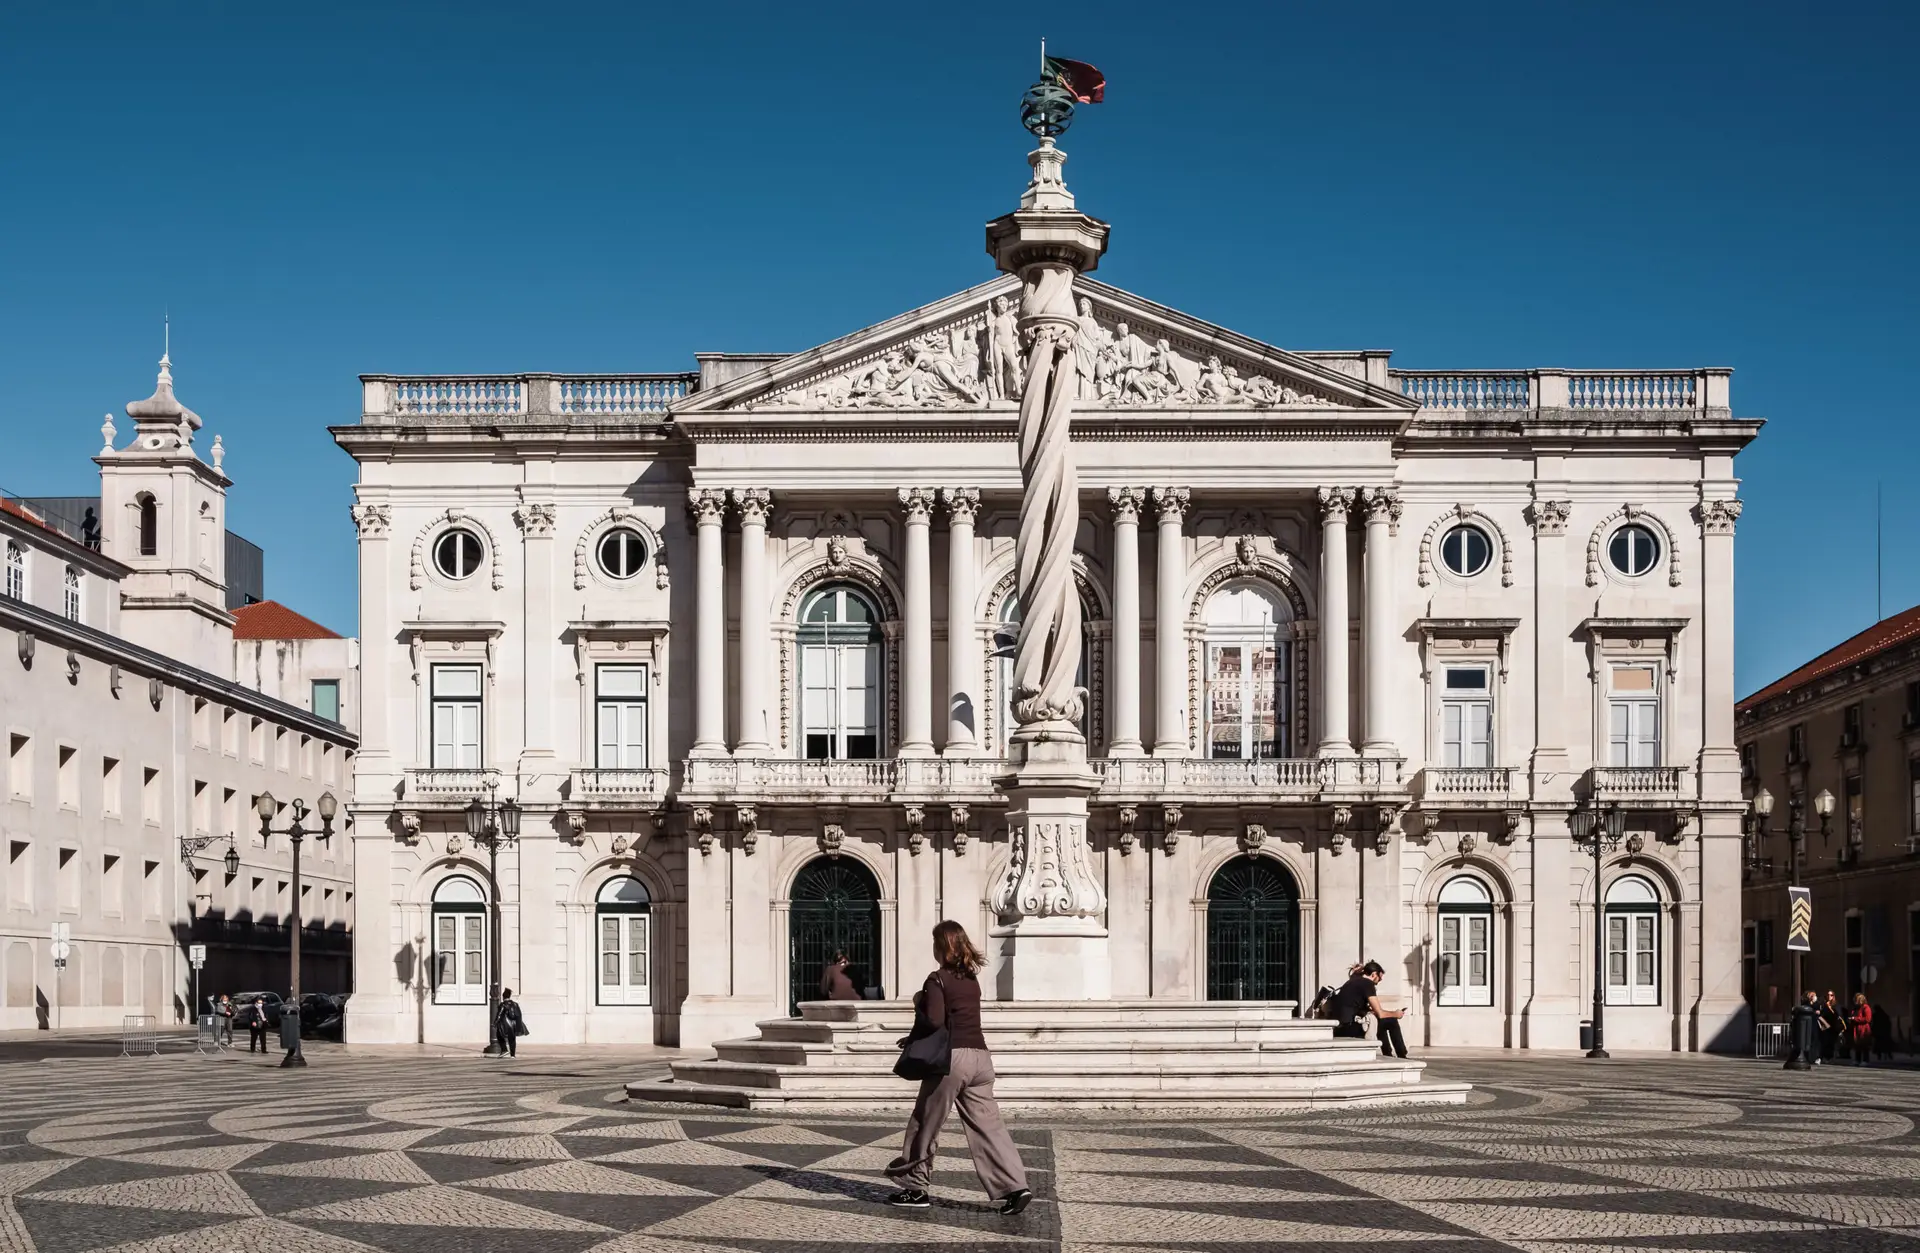 Buscas realizadas esta terça-feira na Câmara de Lisboa estão relacionadas com o processo "Tutti-frutti", revela a Procuradoria